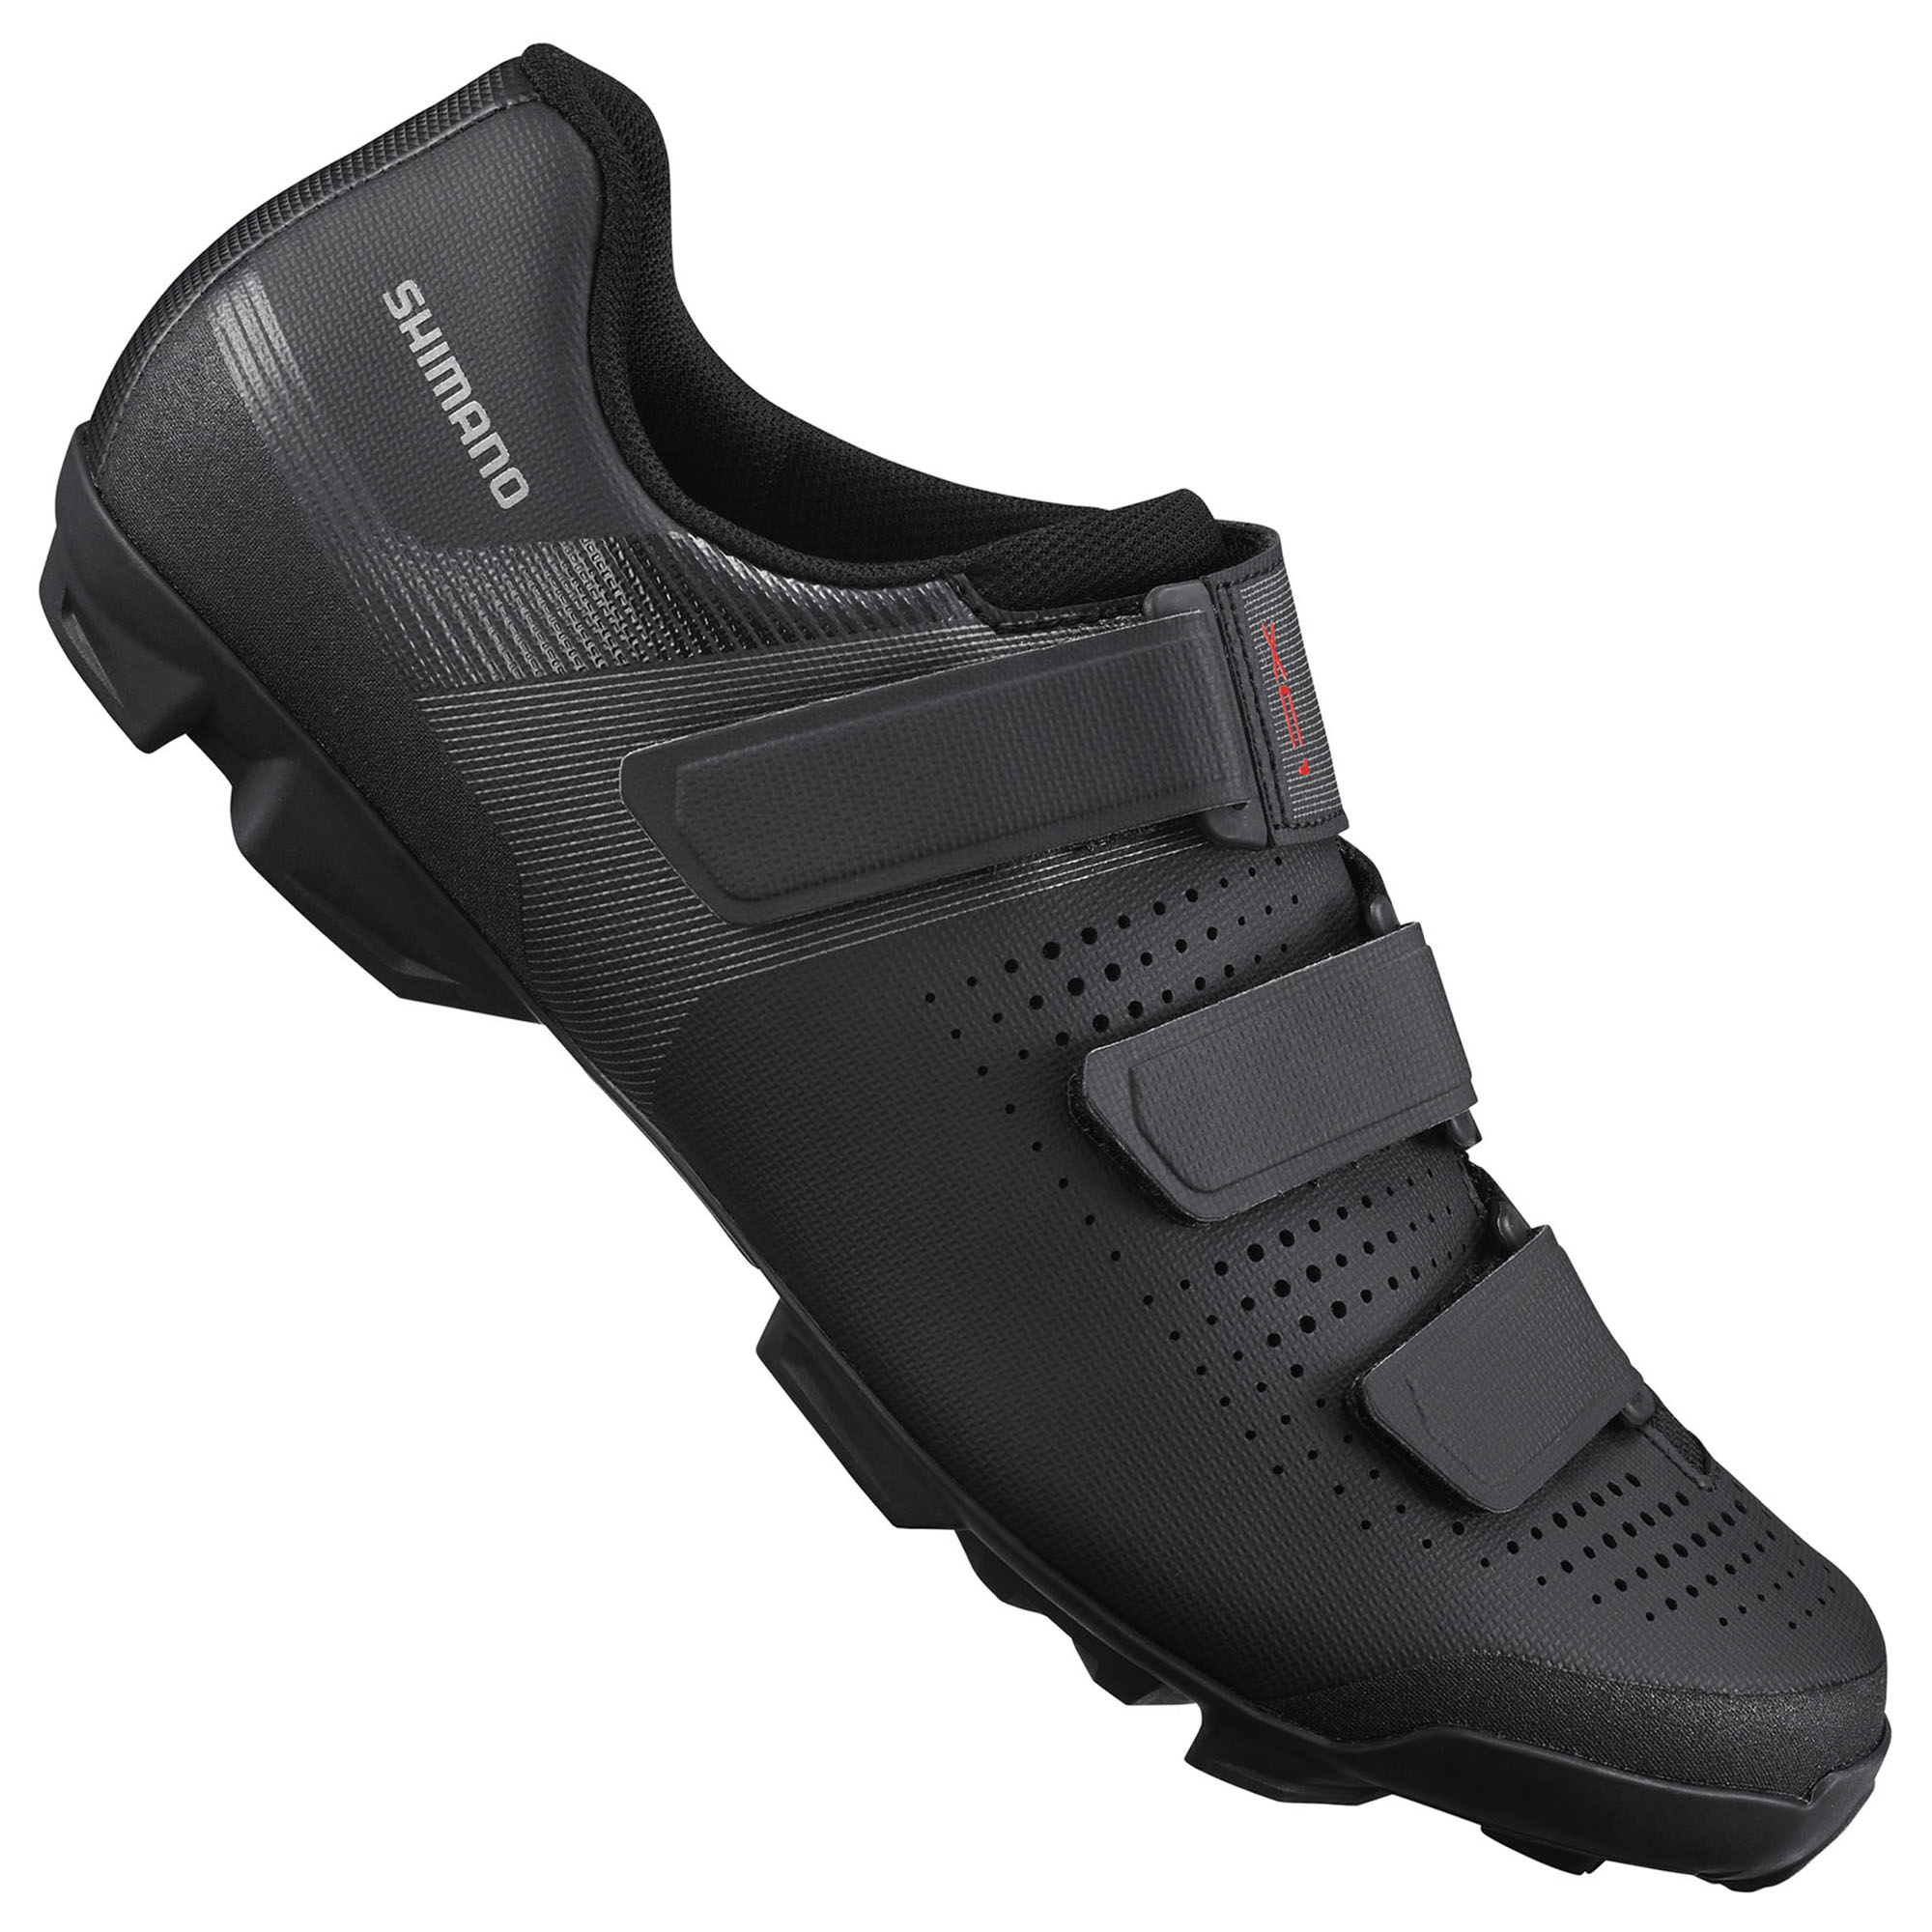 Shimano XC1 Mountain Bike Cross Country Cycling Lightweight SPD Men's Shoes 49